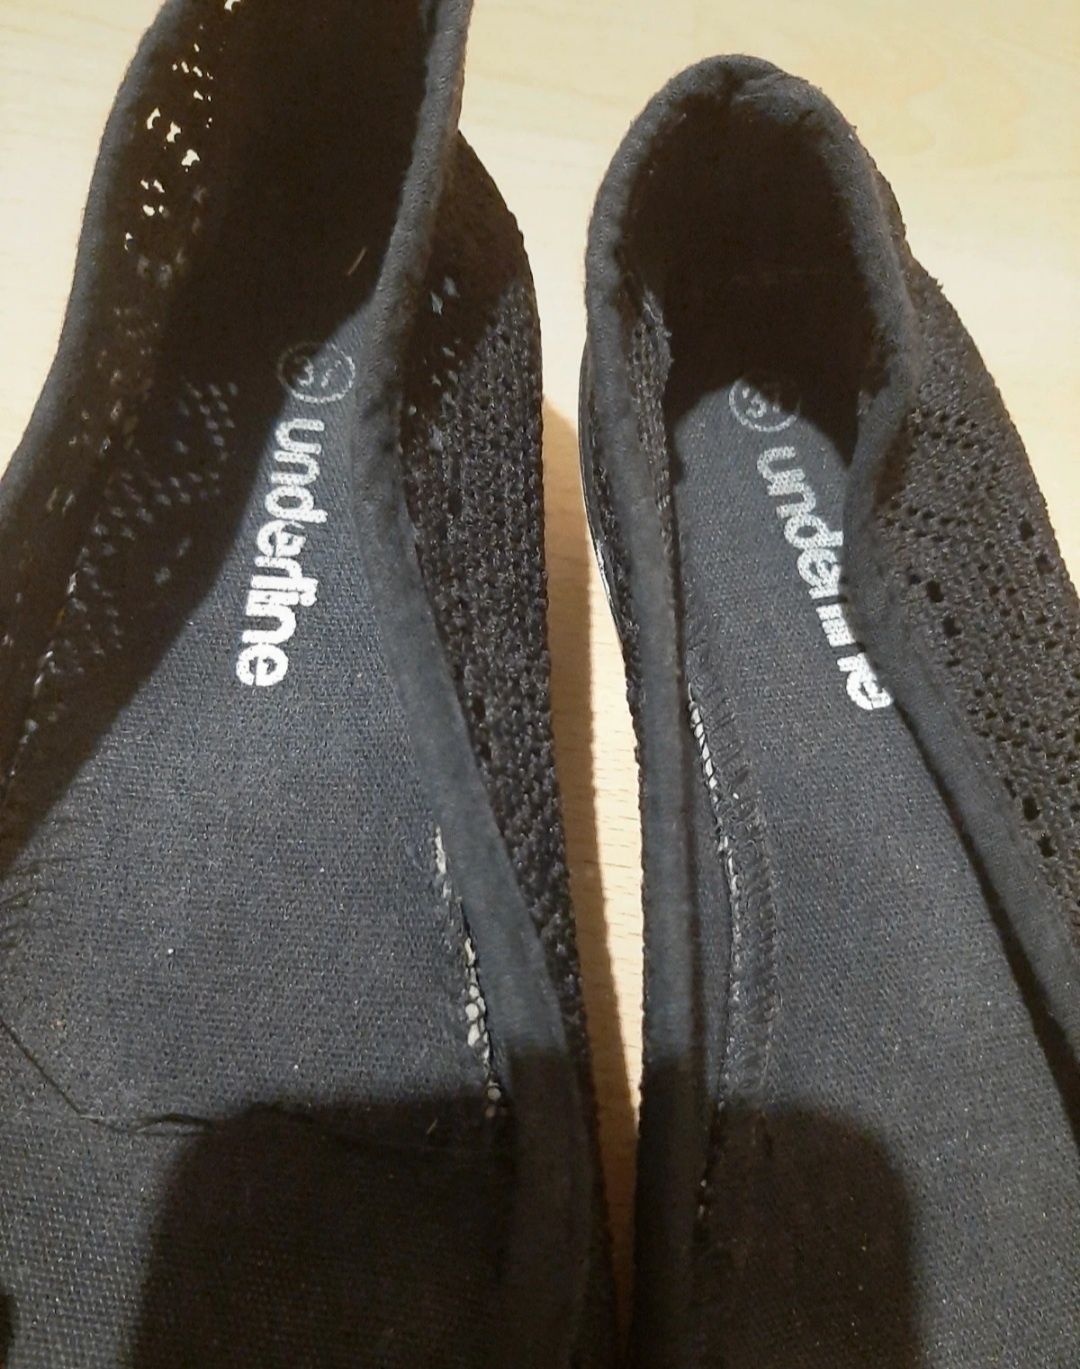 Czarne buty damskie na koturnie 4 cm underline